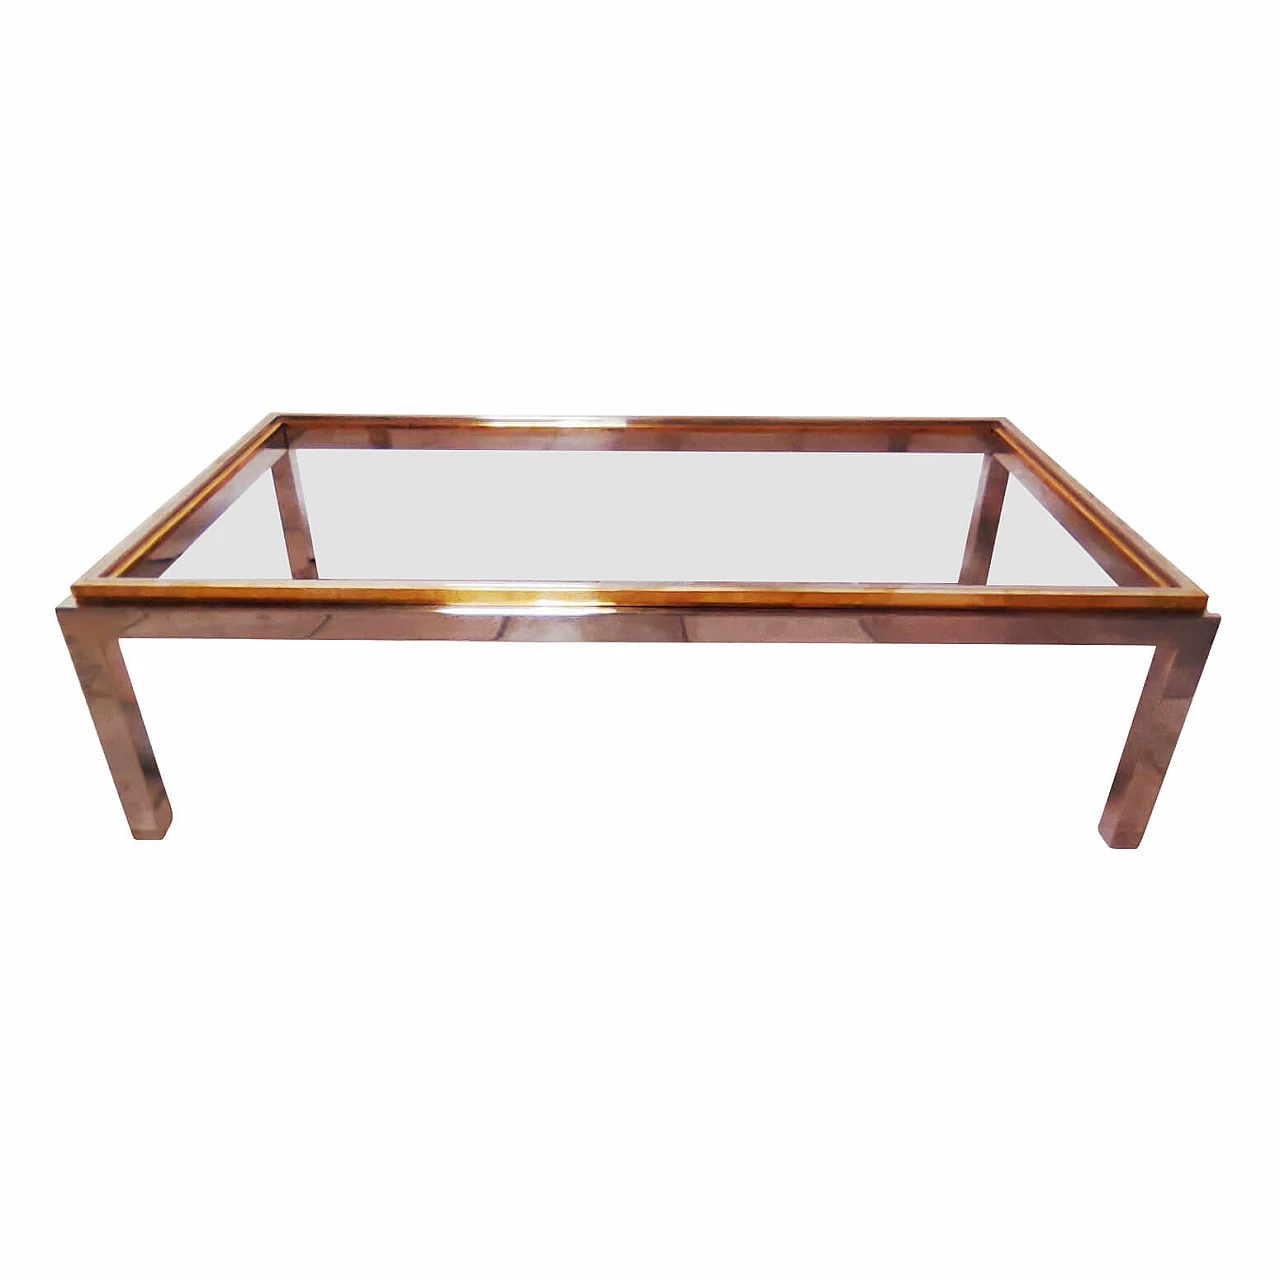 Tavolino in acciaio e ottone con vetro trasparente, di Jean Charles 1162679